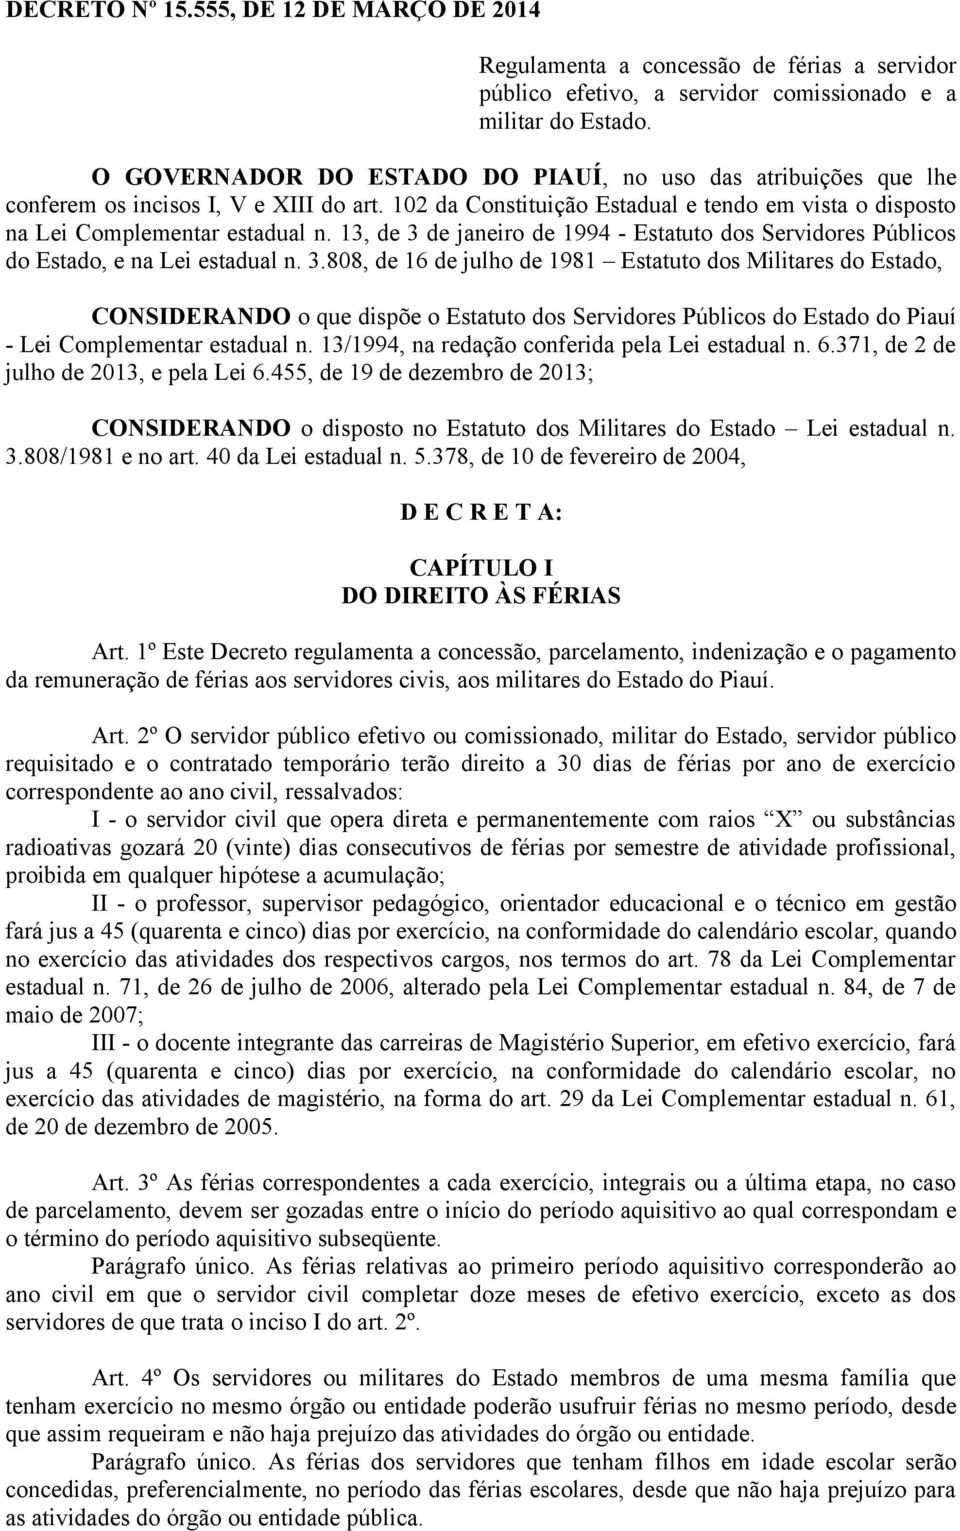 13, de 3 de janeiro de 1994 - Estatuto dos Servidores Públicos do Estado, e na Lei estadual n. 3.808, de 16 de julho de 1981 Estatuto dos Militares do Estado, CONSIDERANDO o que dispõe o Estatuto dos Servidores Públicos do Estado do Piauí - Lei Complementar estadual n.